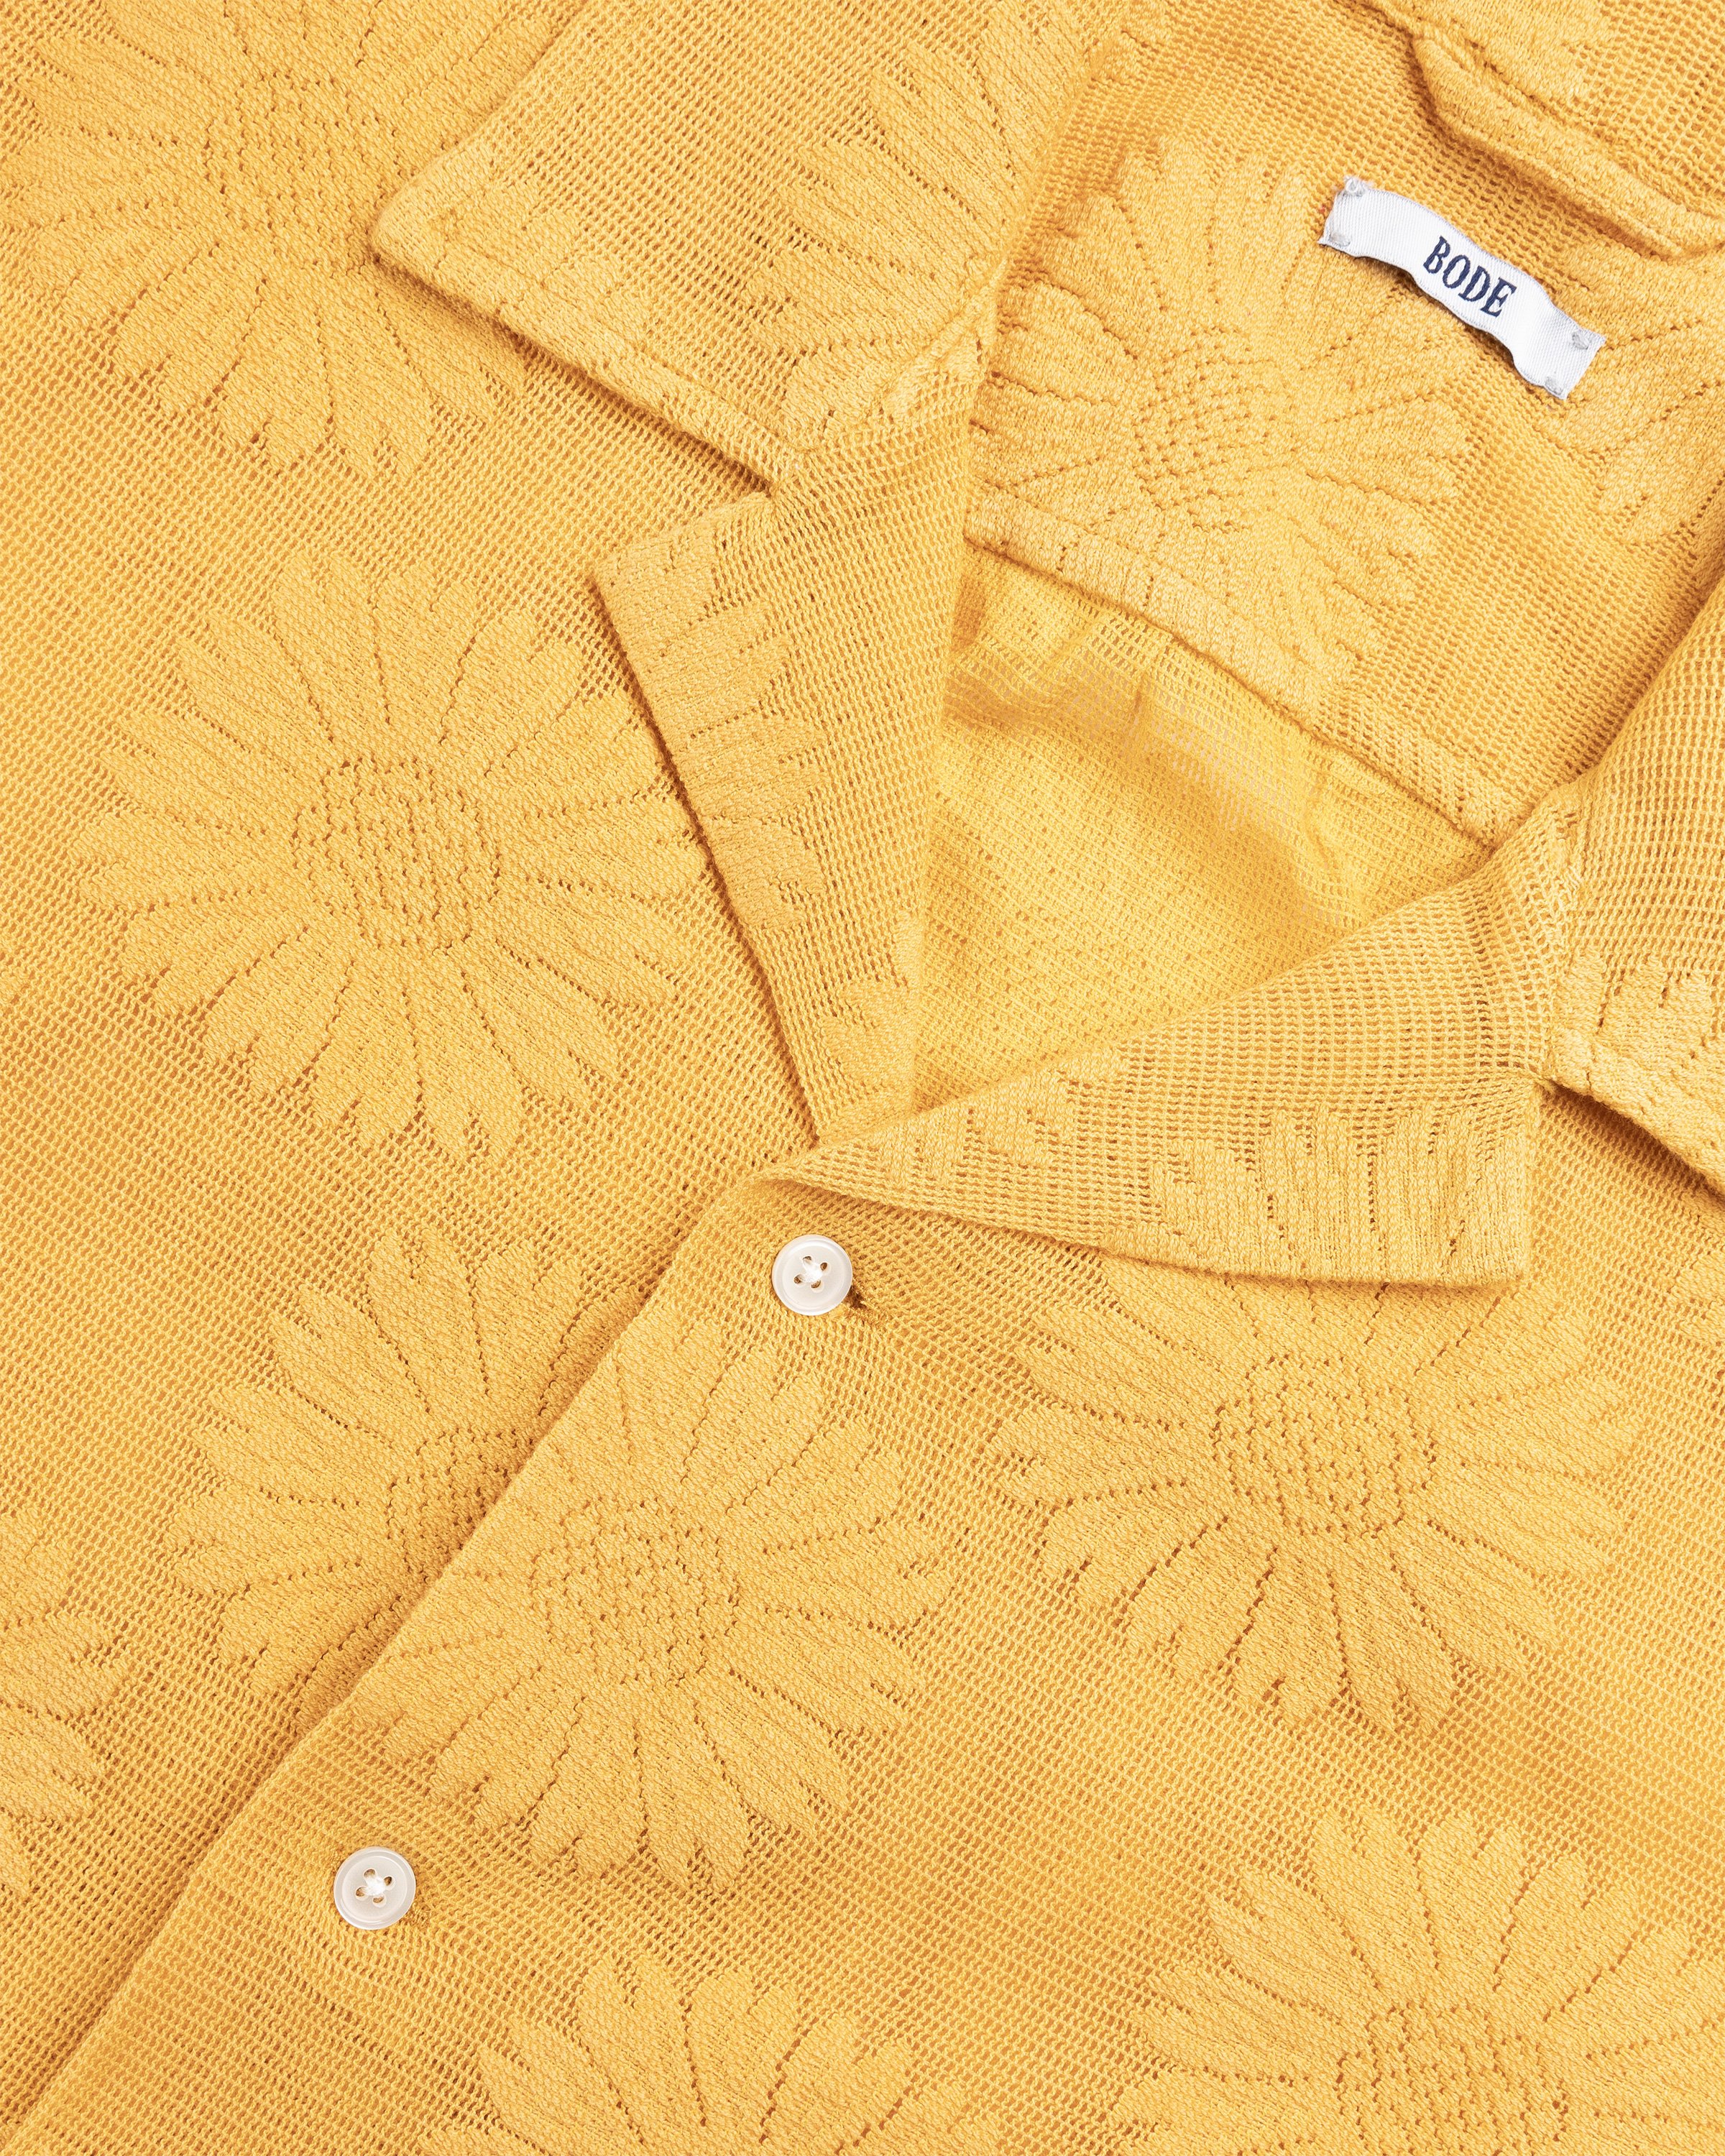 Bode - Sunflower Lace Shortsleeve Shirt - Clothing - Yellow - Image 6